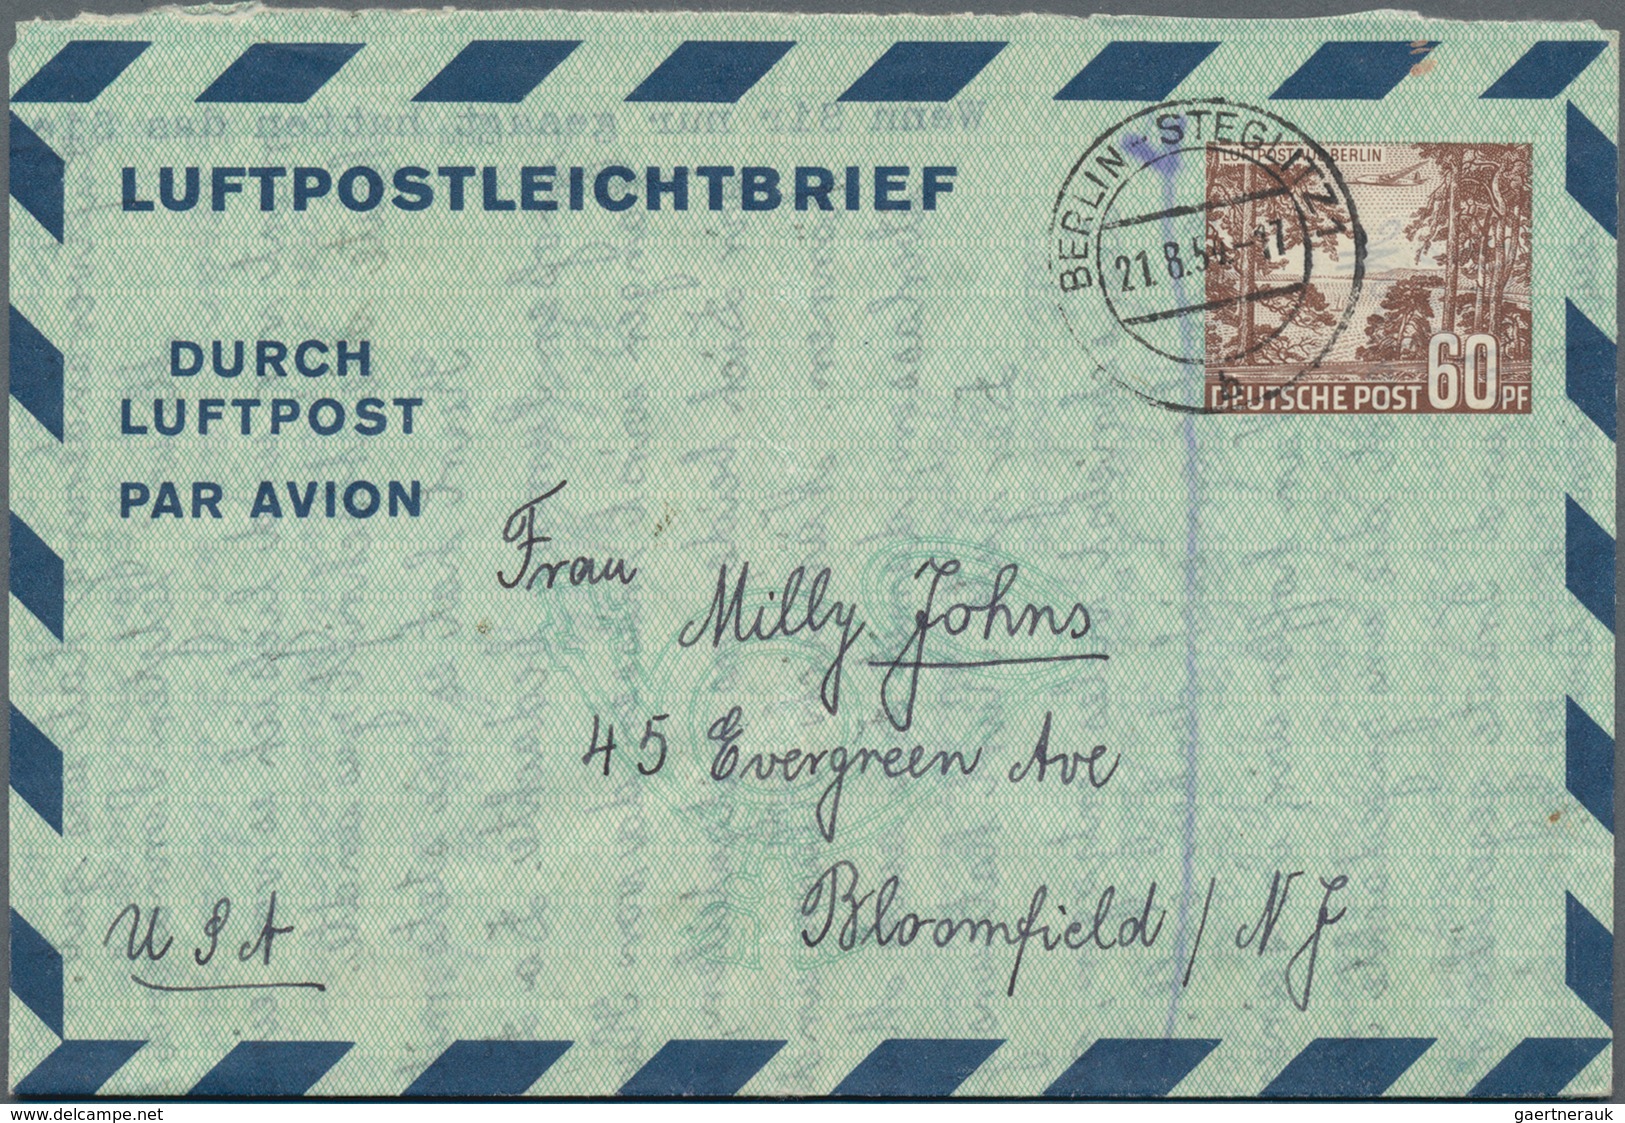 Berlin - Ganzsachen: 1950/54, vier gebrauchte Ganzsachenluftpost und -luftpostleichtbriefe, 2x mit E